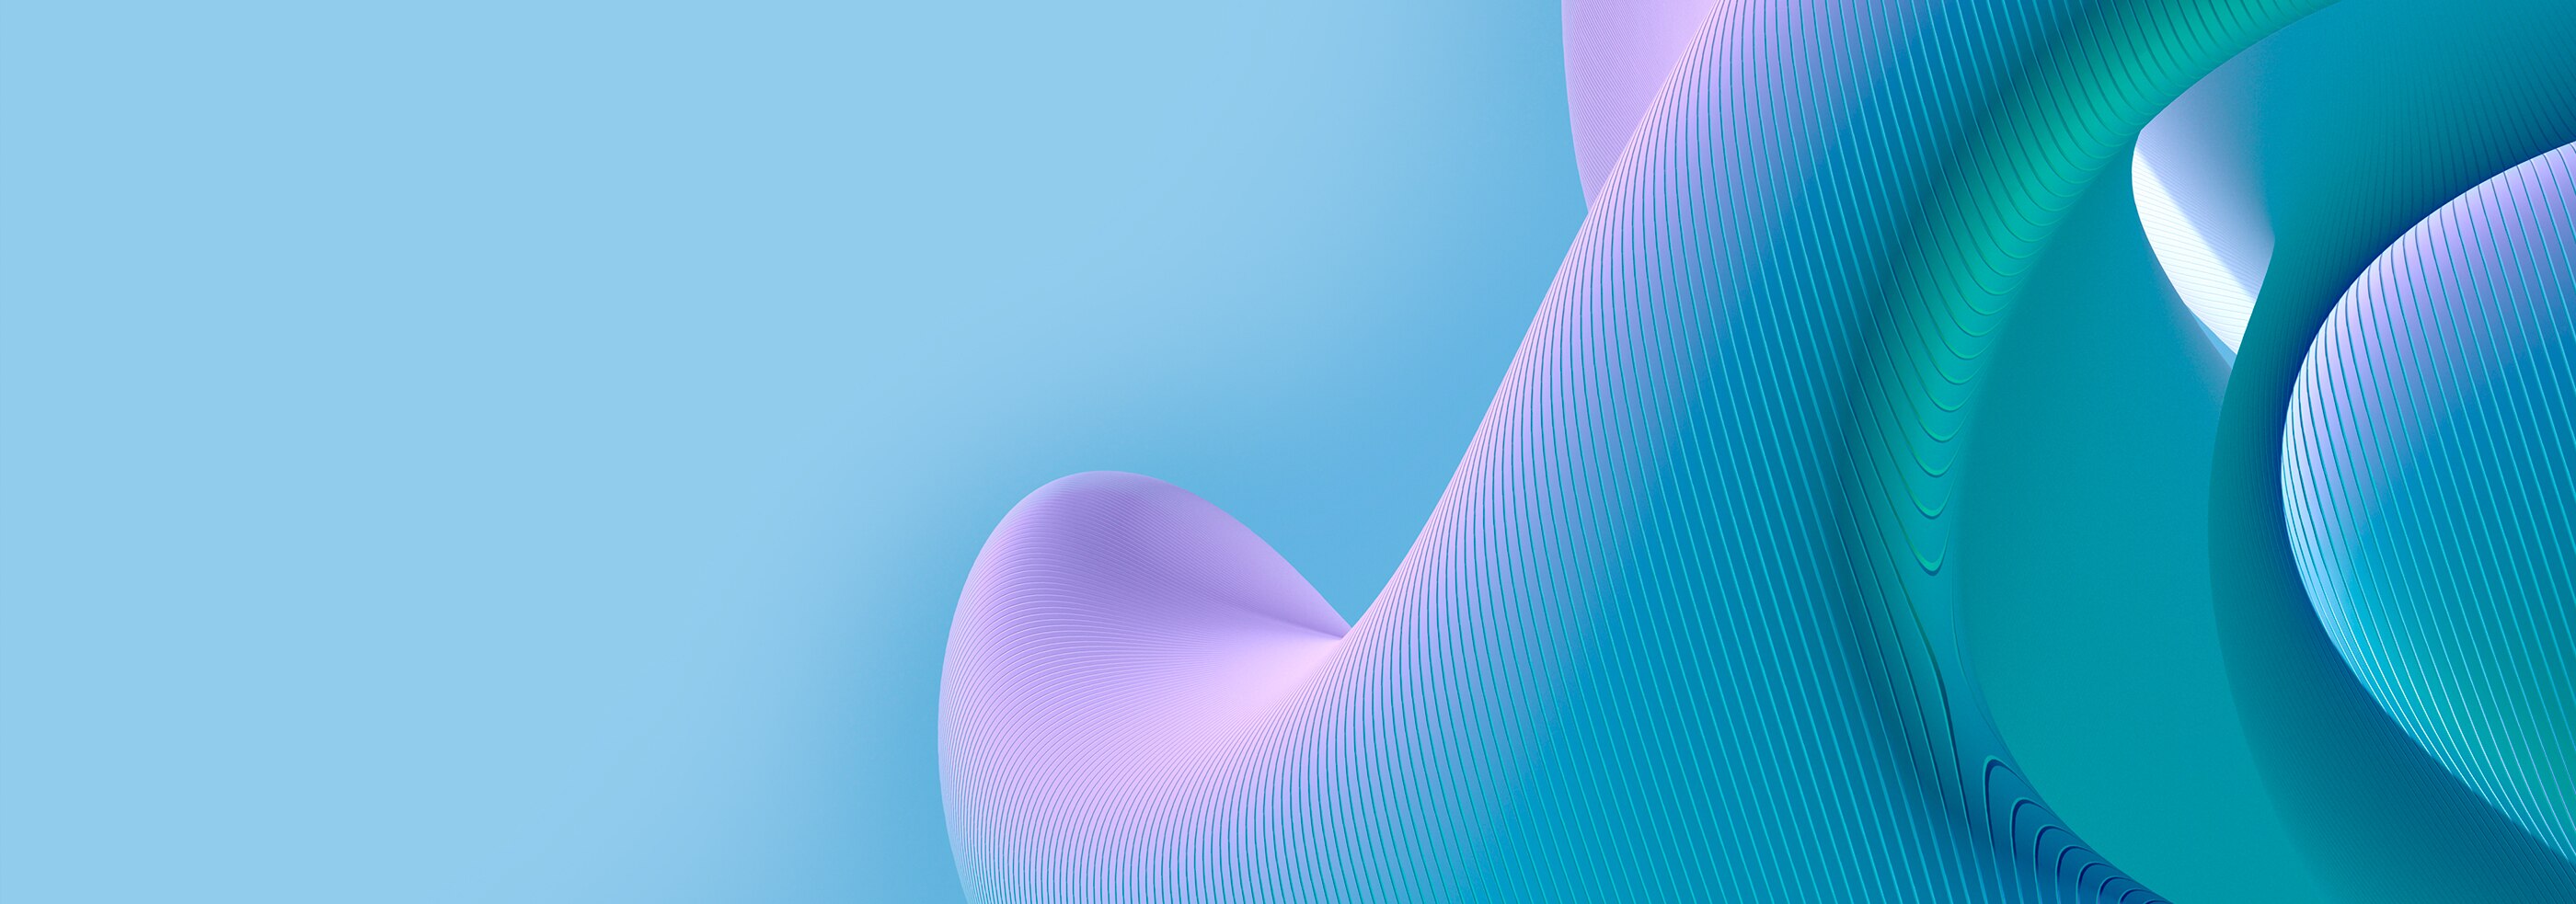 Motif de courbes 3D sur une surface en bleu et violet